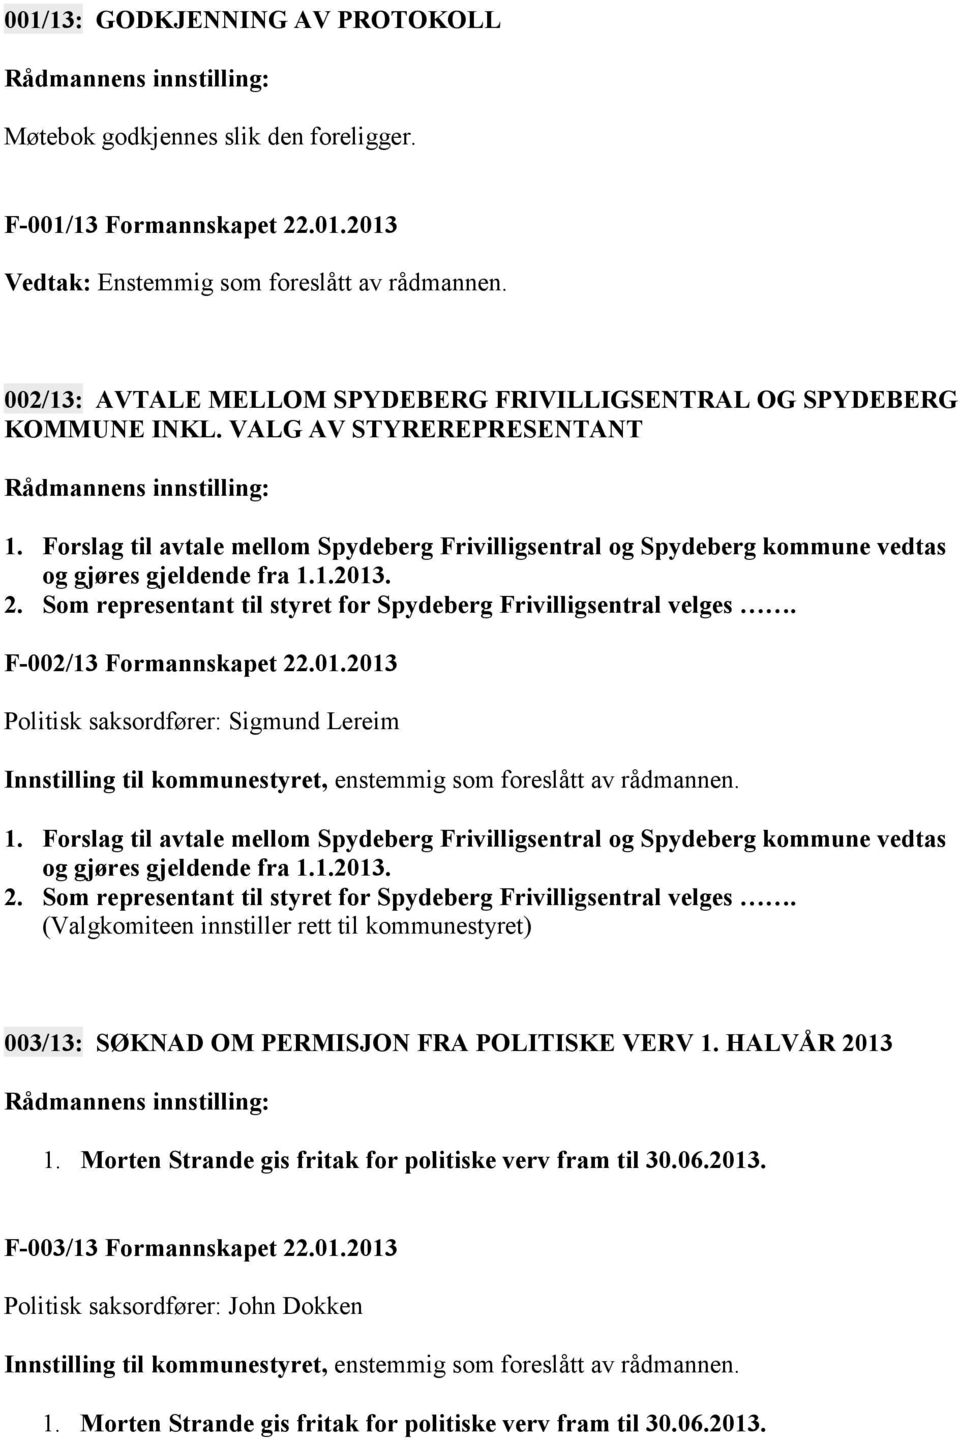 Forslag til avtale mellom Spydeberg Frivilligsentral og Spydeberg kommune vedtas og gjøres gjeldende fra 1.1.2013. 2. Som representant til styret for Spydeberg Frivilligsentral velges.